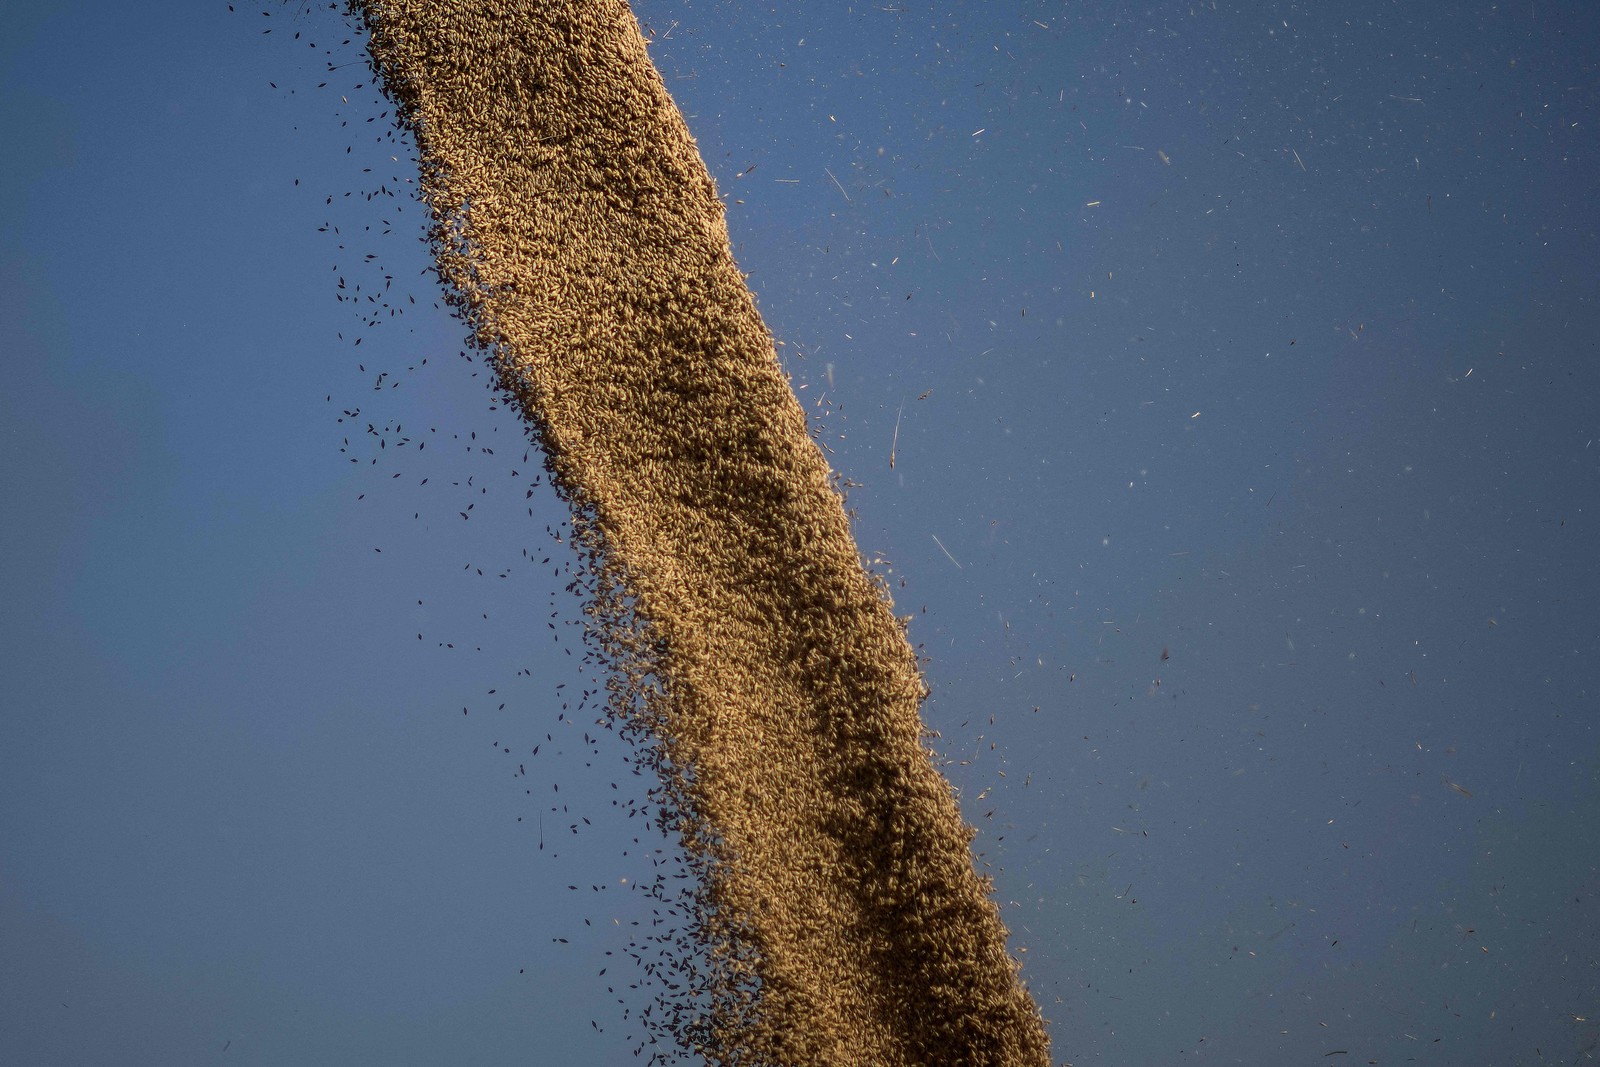 A Grã-Bretanha que sofreu com ondas de calor neste verão vê a colheita de cevada retrair em mais de 10% devido às condições climáticas  — Foto: BEN STANSALL / AFP